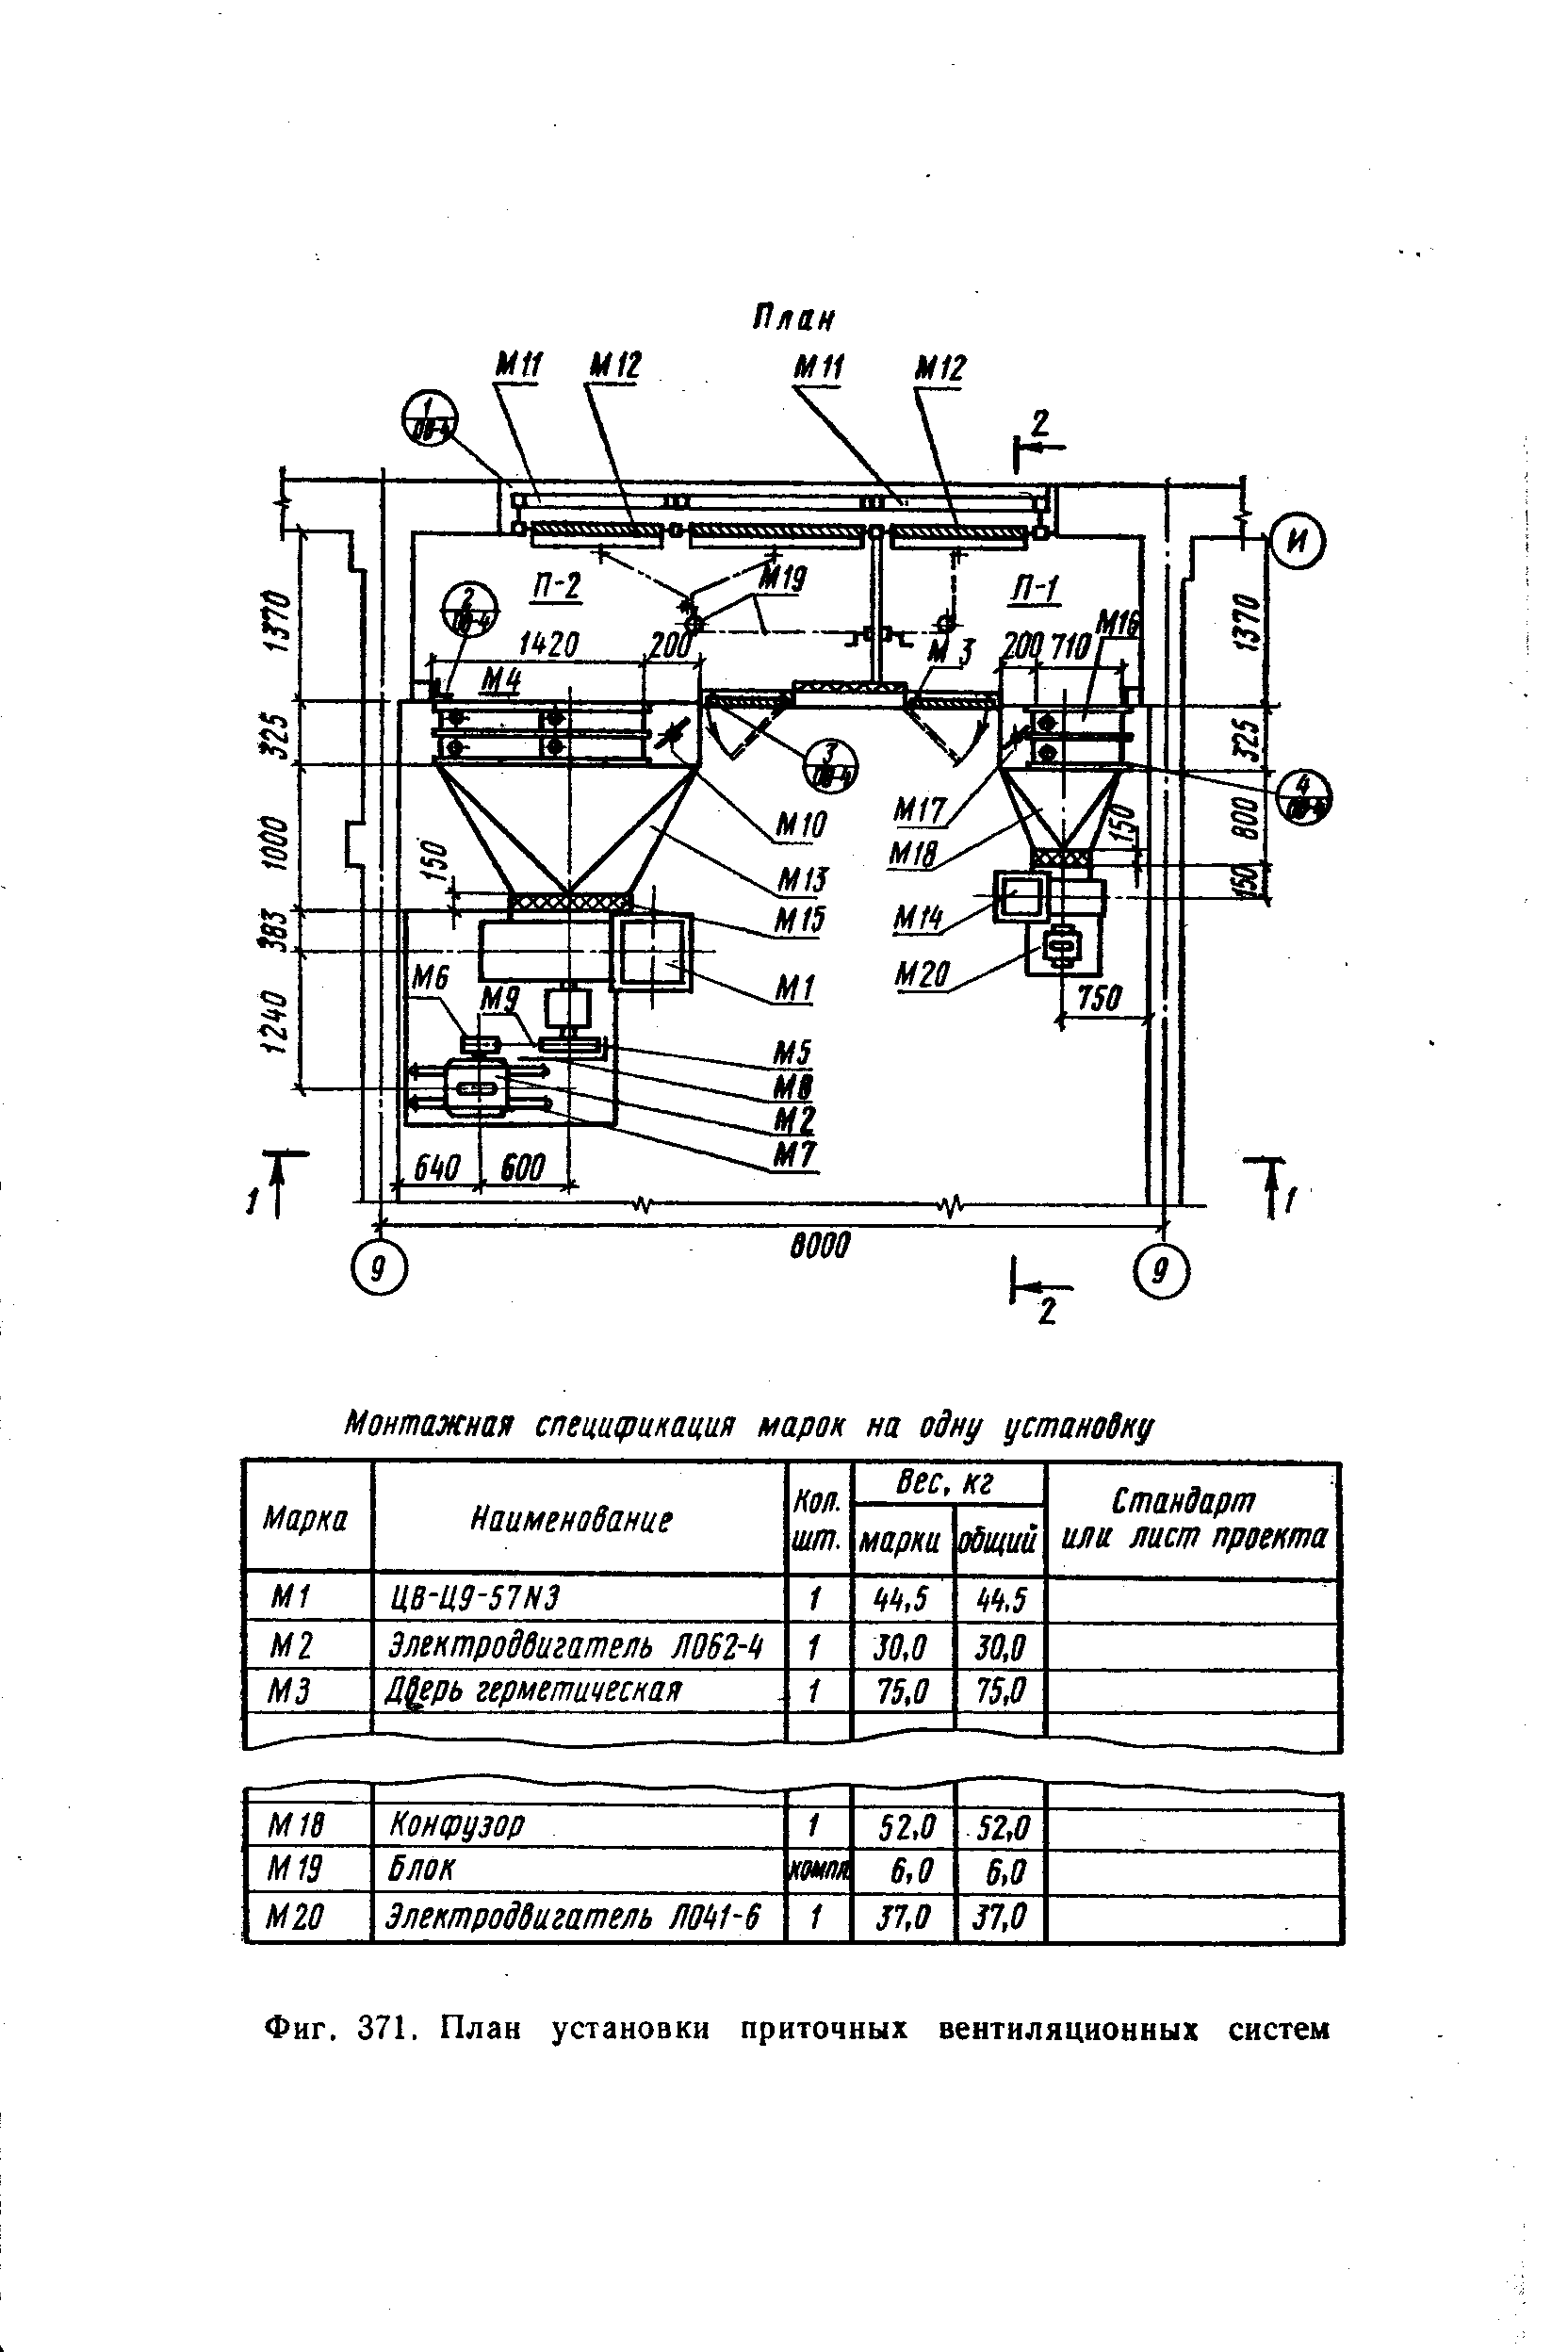 Фиг. 371. План установки приточных вентиляционных систем
